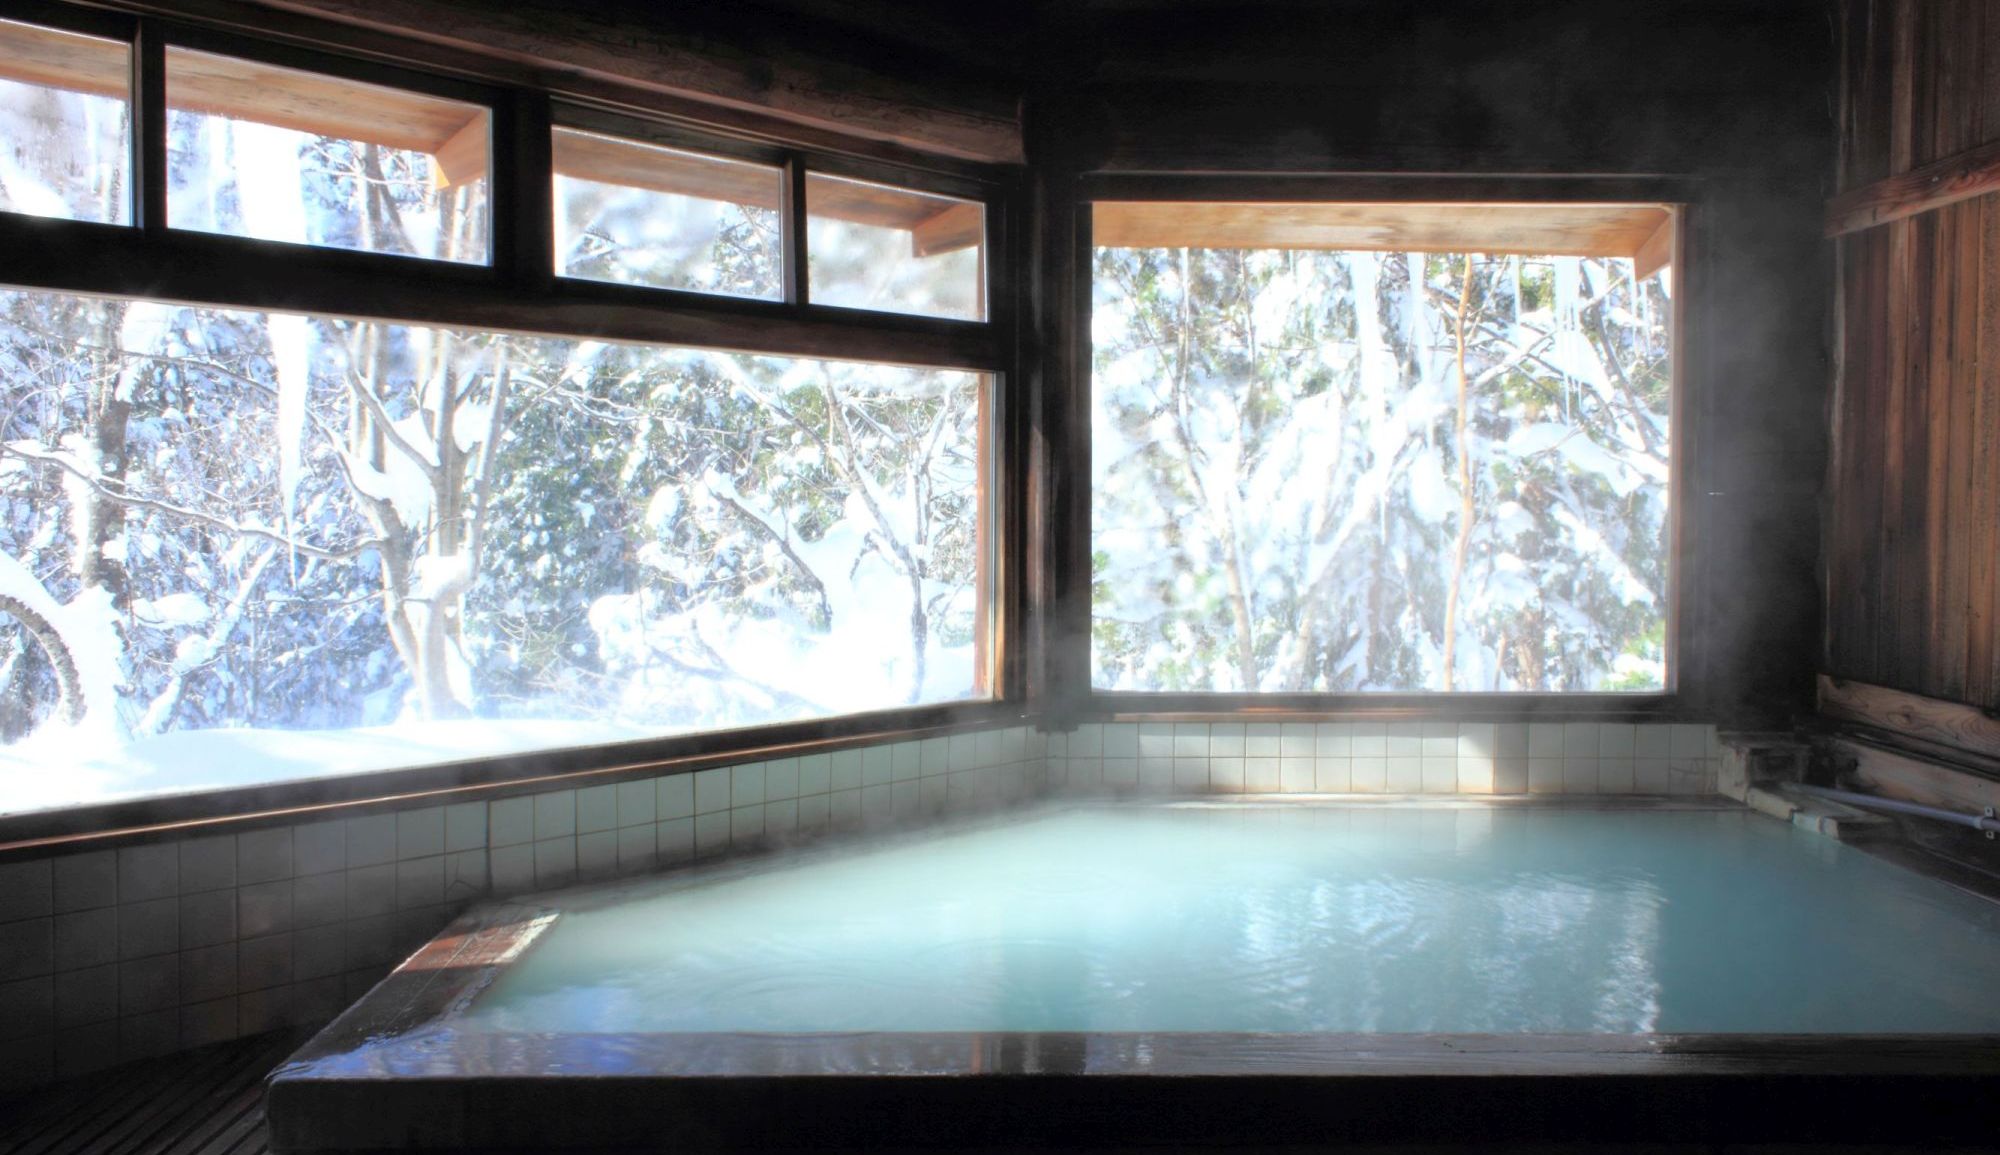 【丸太造りの天然温泉】スキーで疲れた後は雪見風呂でほっこりと。広めの窓から雪景色が眺められる